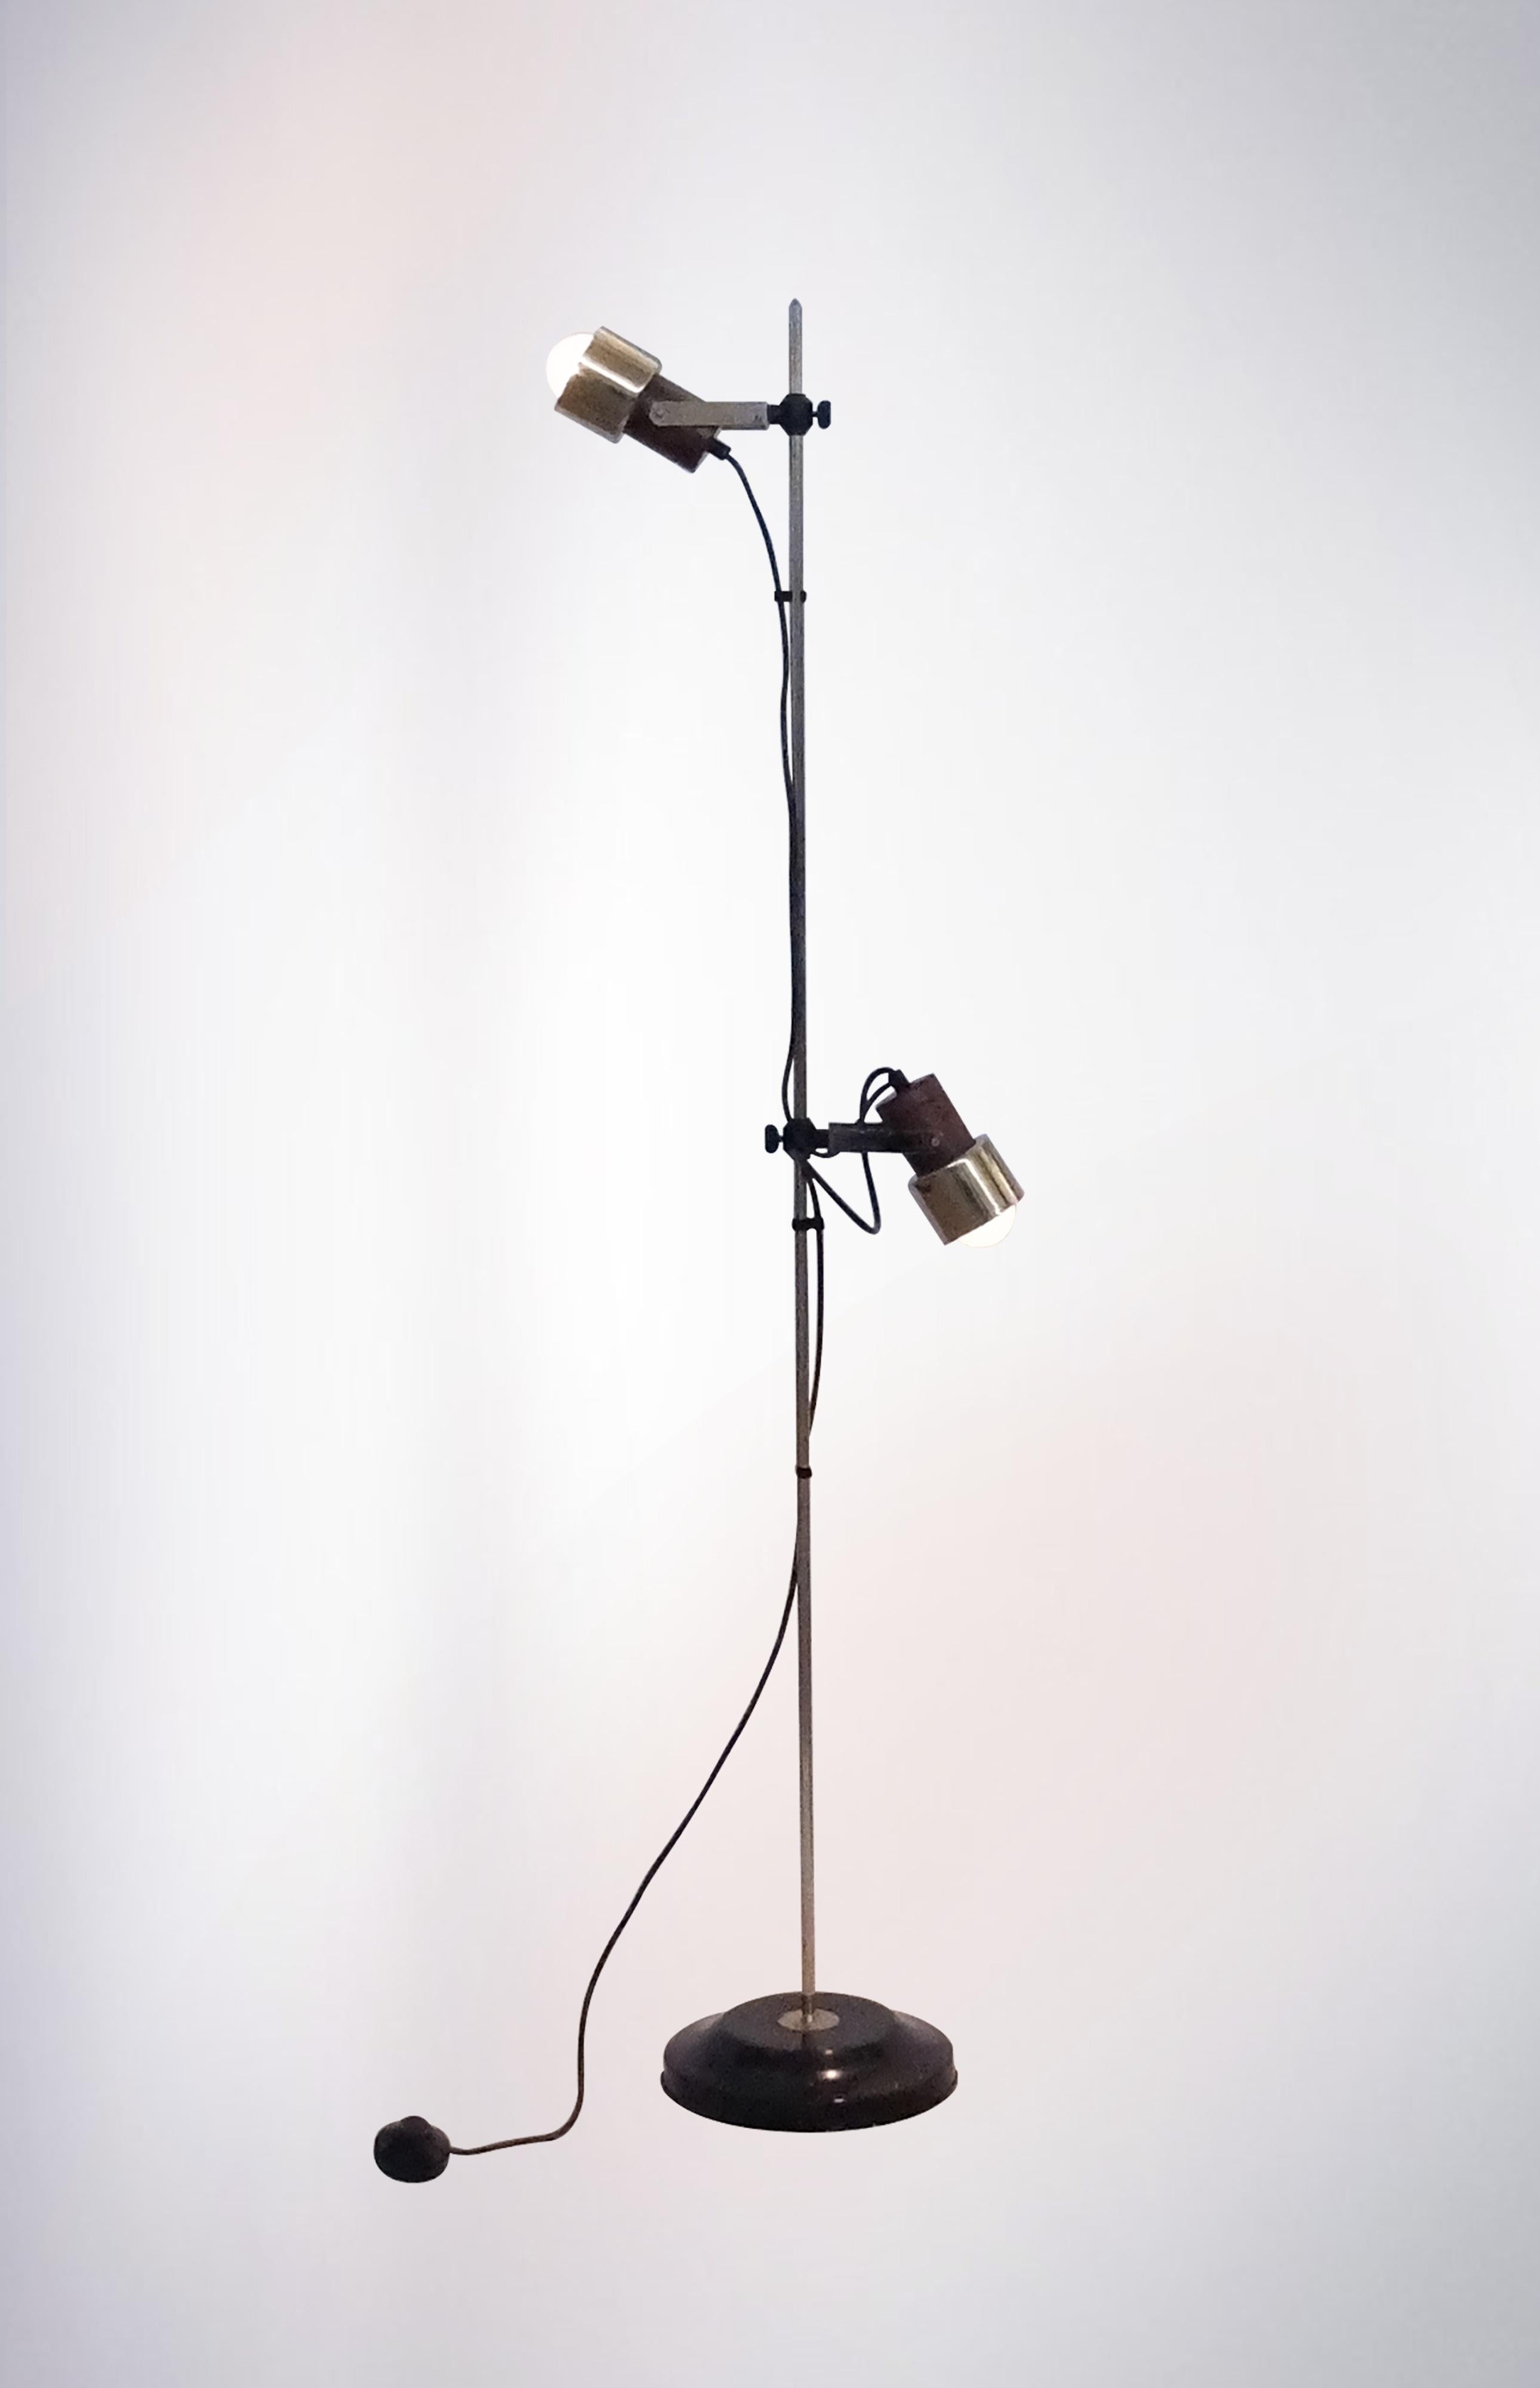 Lampadaire en métal avec spots réglables des années 1950 par Reggiani, avec une construction solide et robuste et une attention aux détails, de première qualité en laiton épais du milieu du siècle.

Placé sur un socle en plastique rigide, il fait